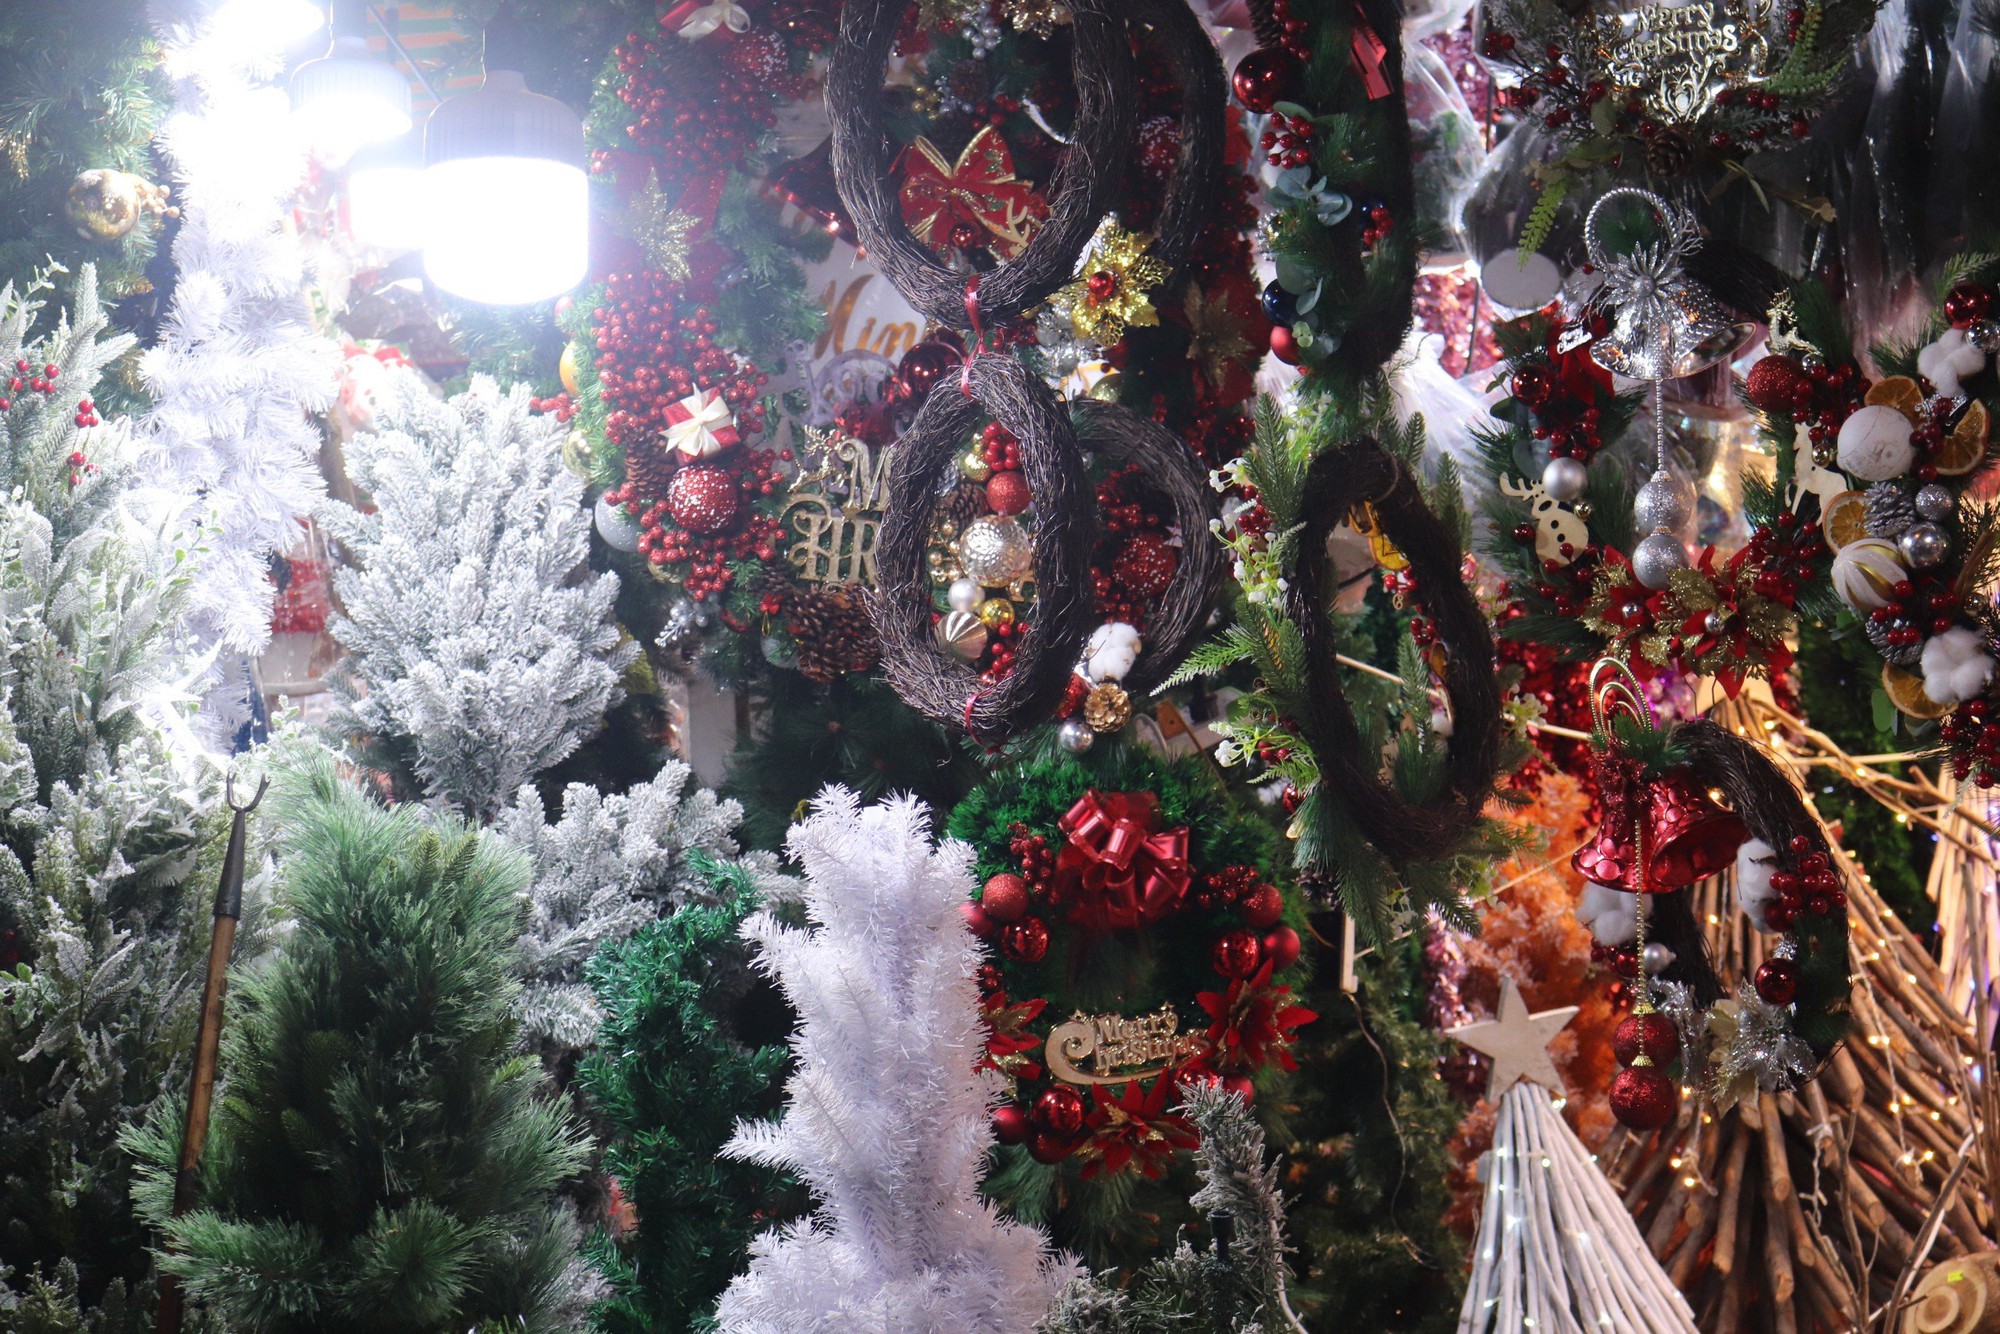 Người dân mua sắm Giáng sinh sớm, chợ đồ trang trí lớn nhất Sài Gòn sáng đèn từ đầu tháng 11 - Ảnh 2.